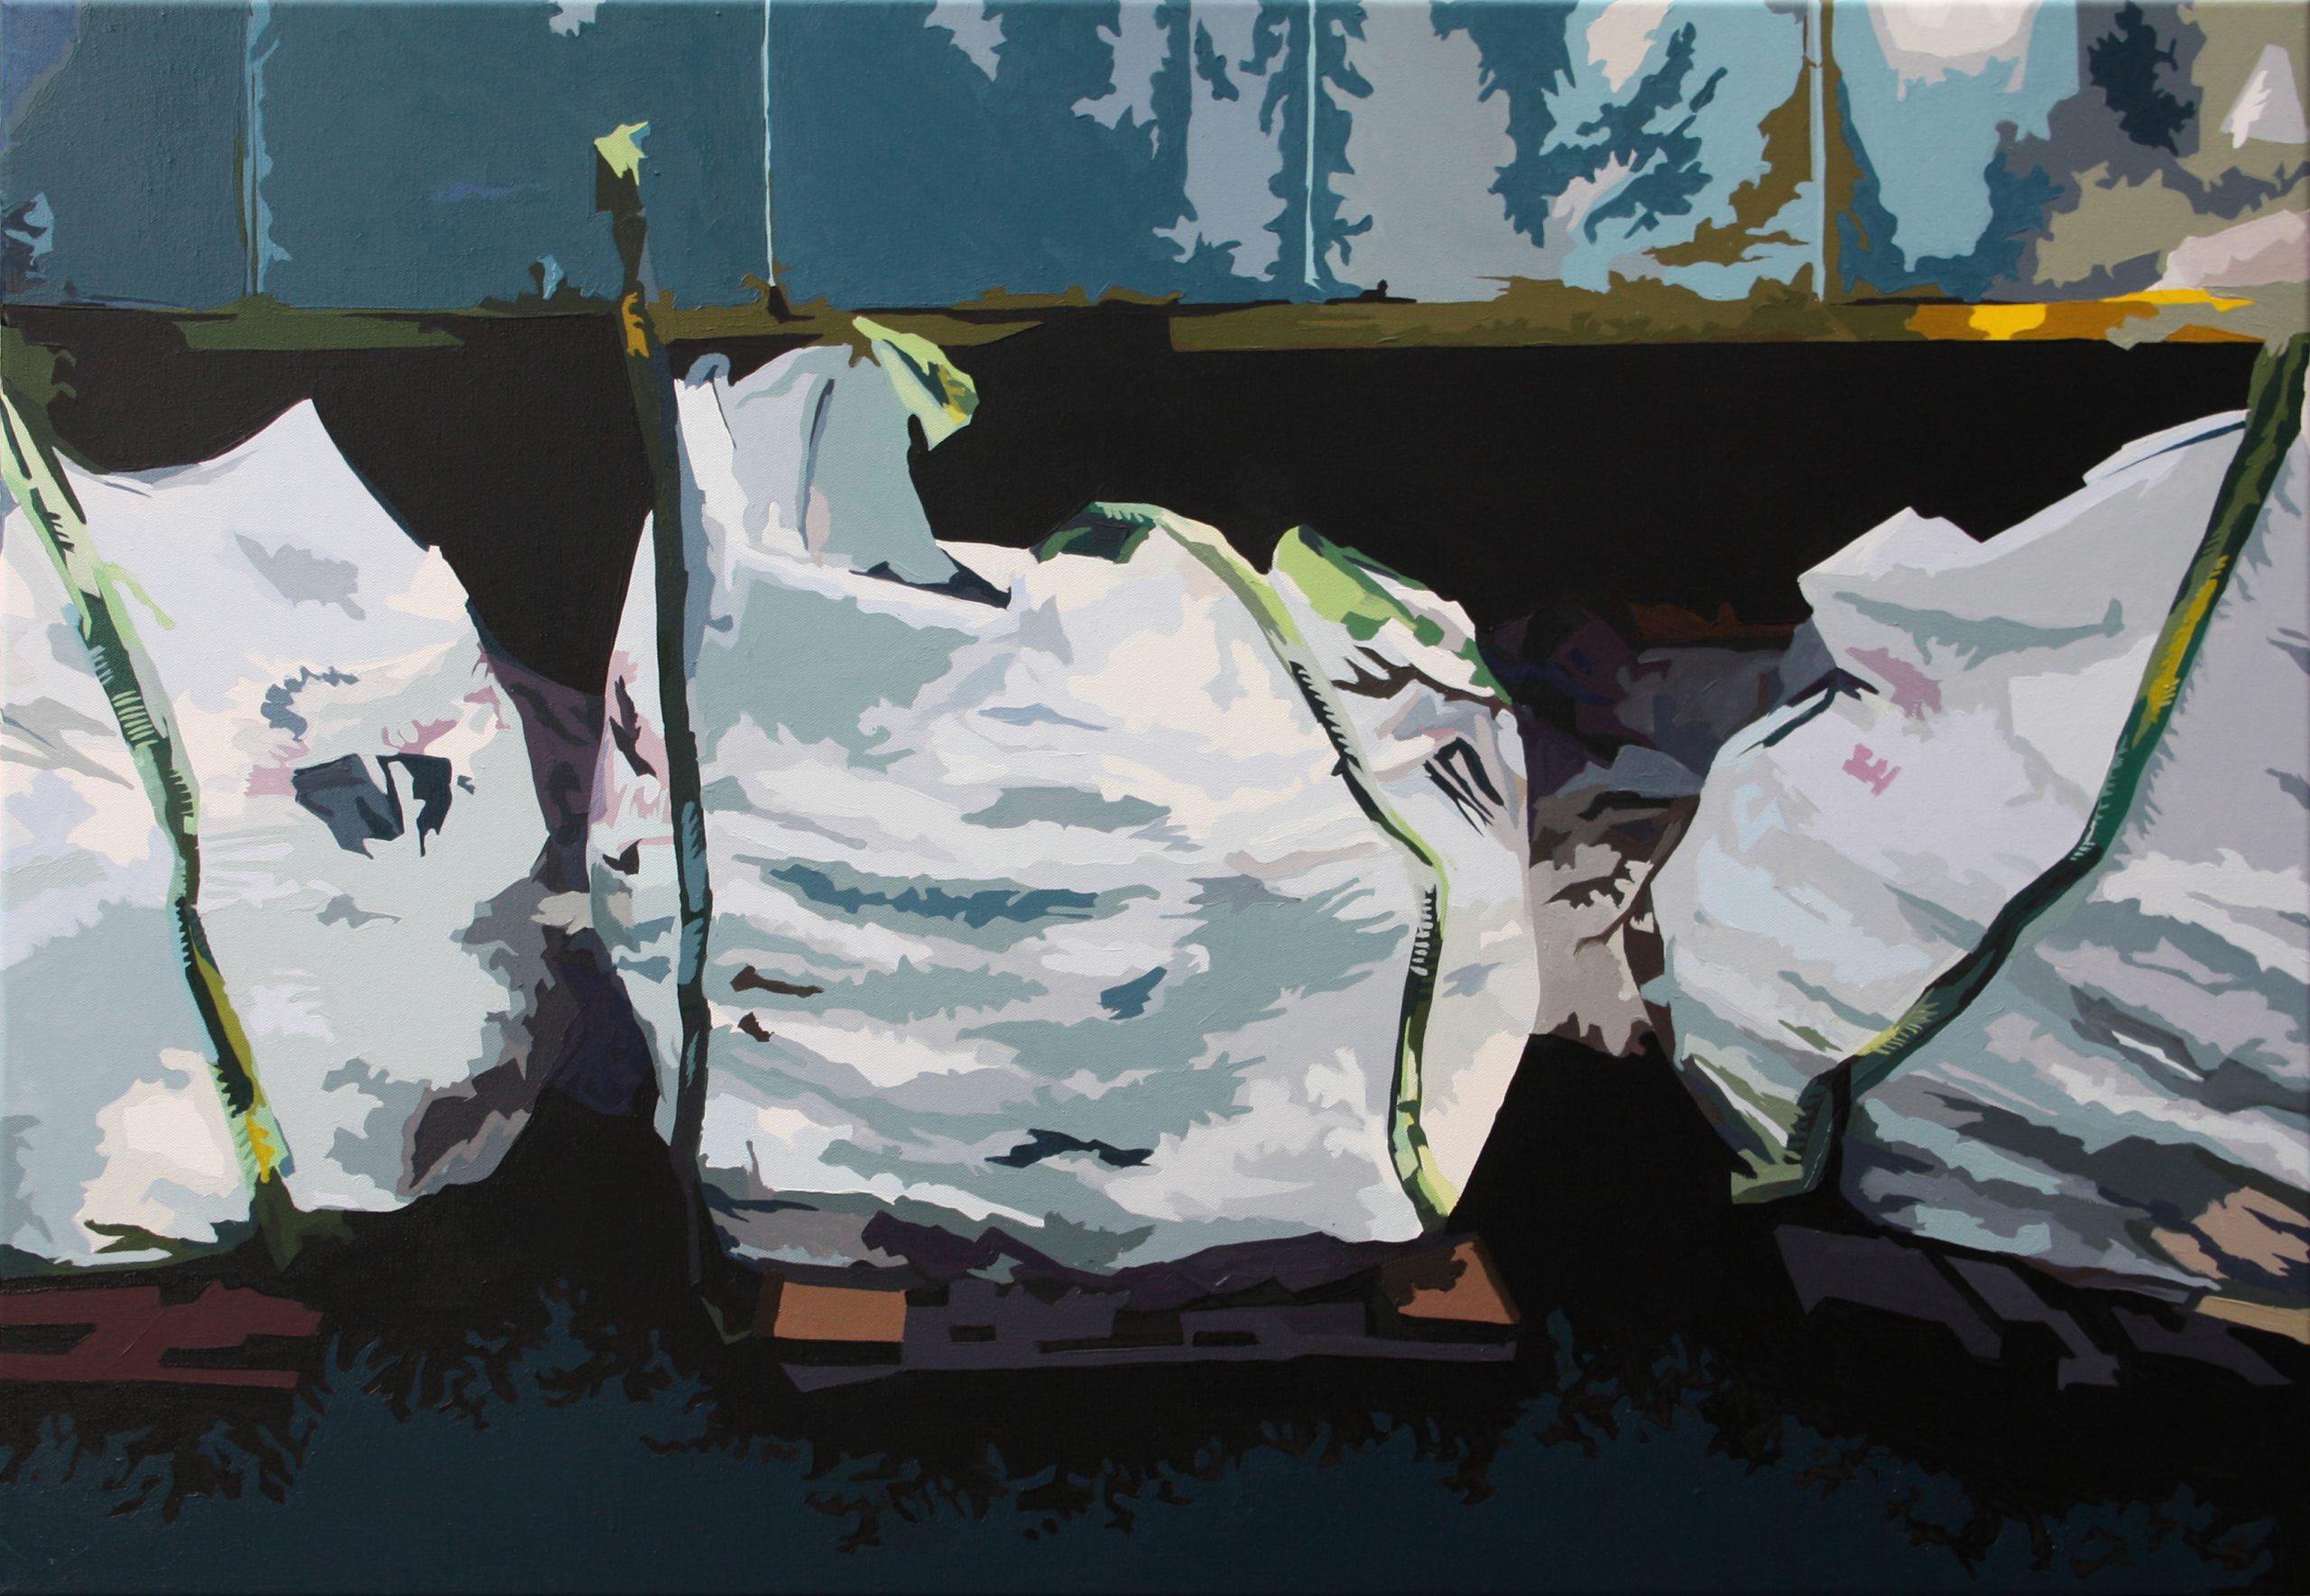 Gemälde von drei voll bepackten, weißen Säcken.